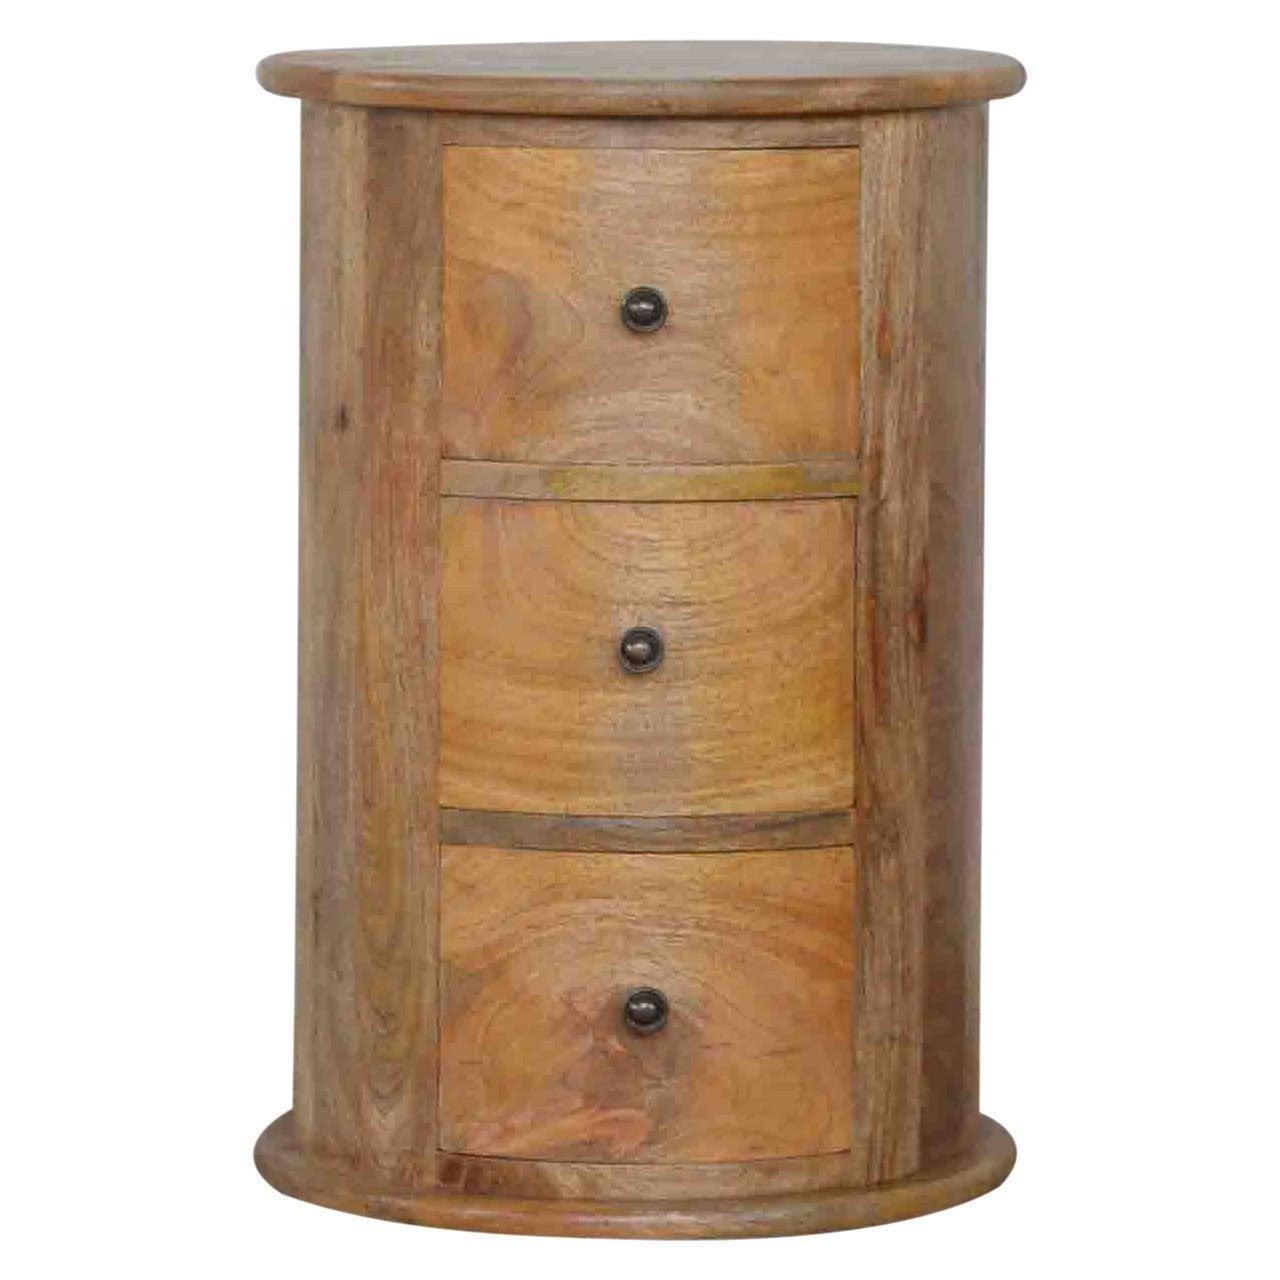 3 drawer drum chest - crimblefest furniture - image 1